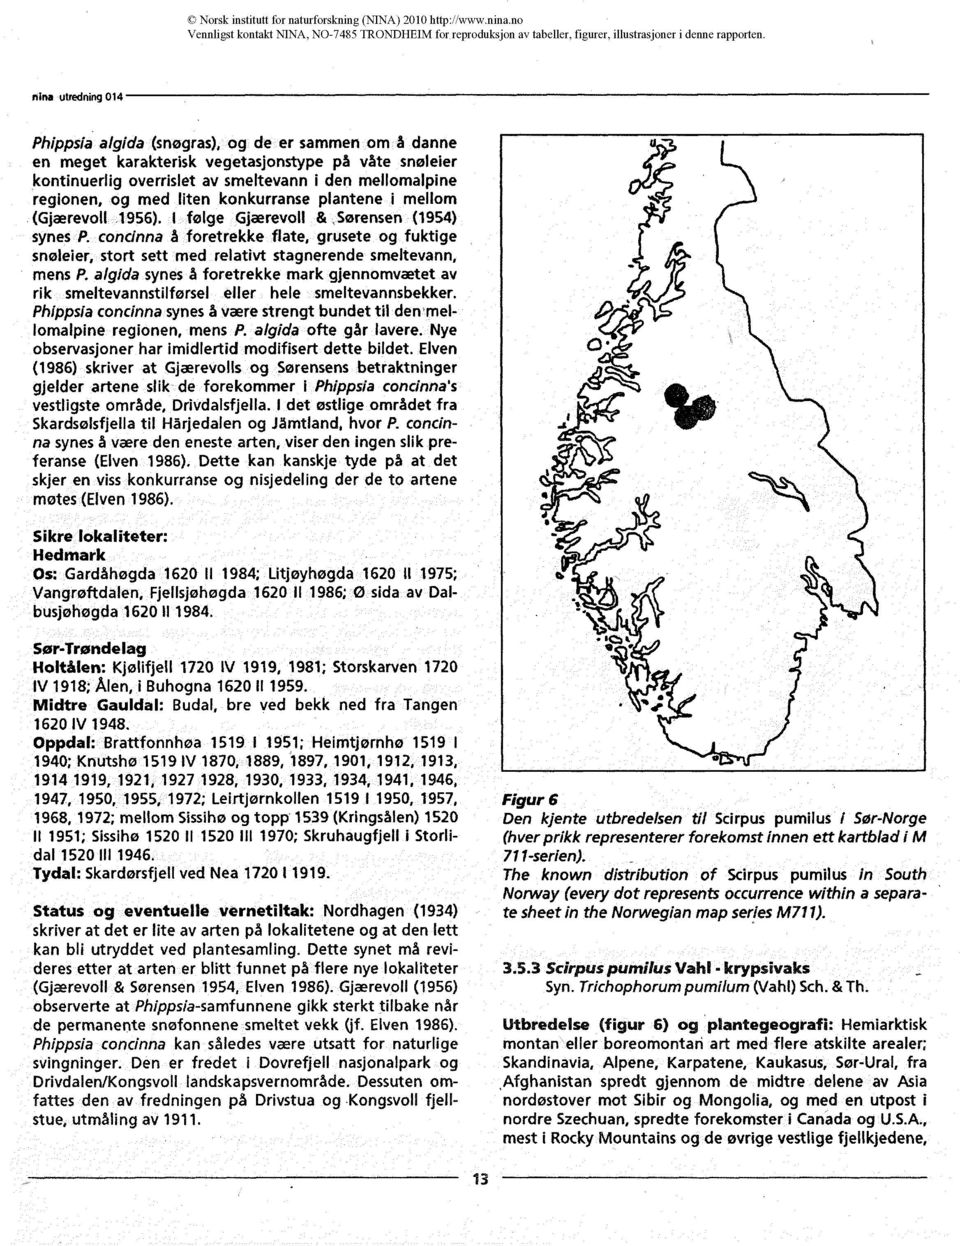 plantene i mellom (Gjærevoll 1956). I følge Gjærevoll & Sørensen (1954) synes P. concinna å foretrekke flate, grusete og fuktige snøleier, stort sett med relativt stagnerende smeltevann, mens P.